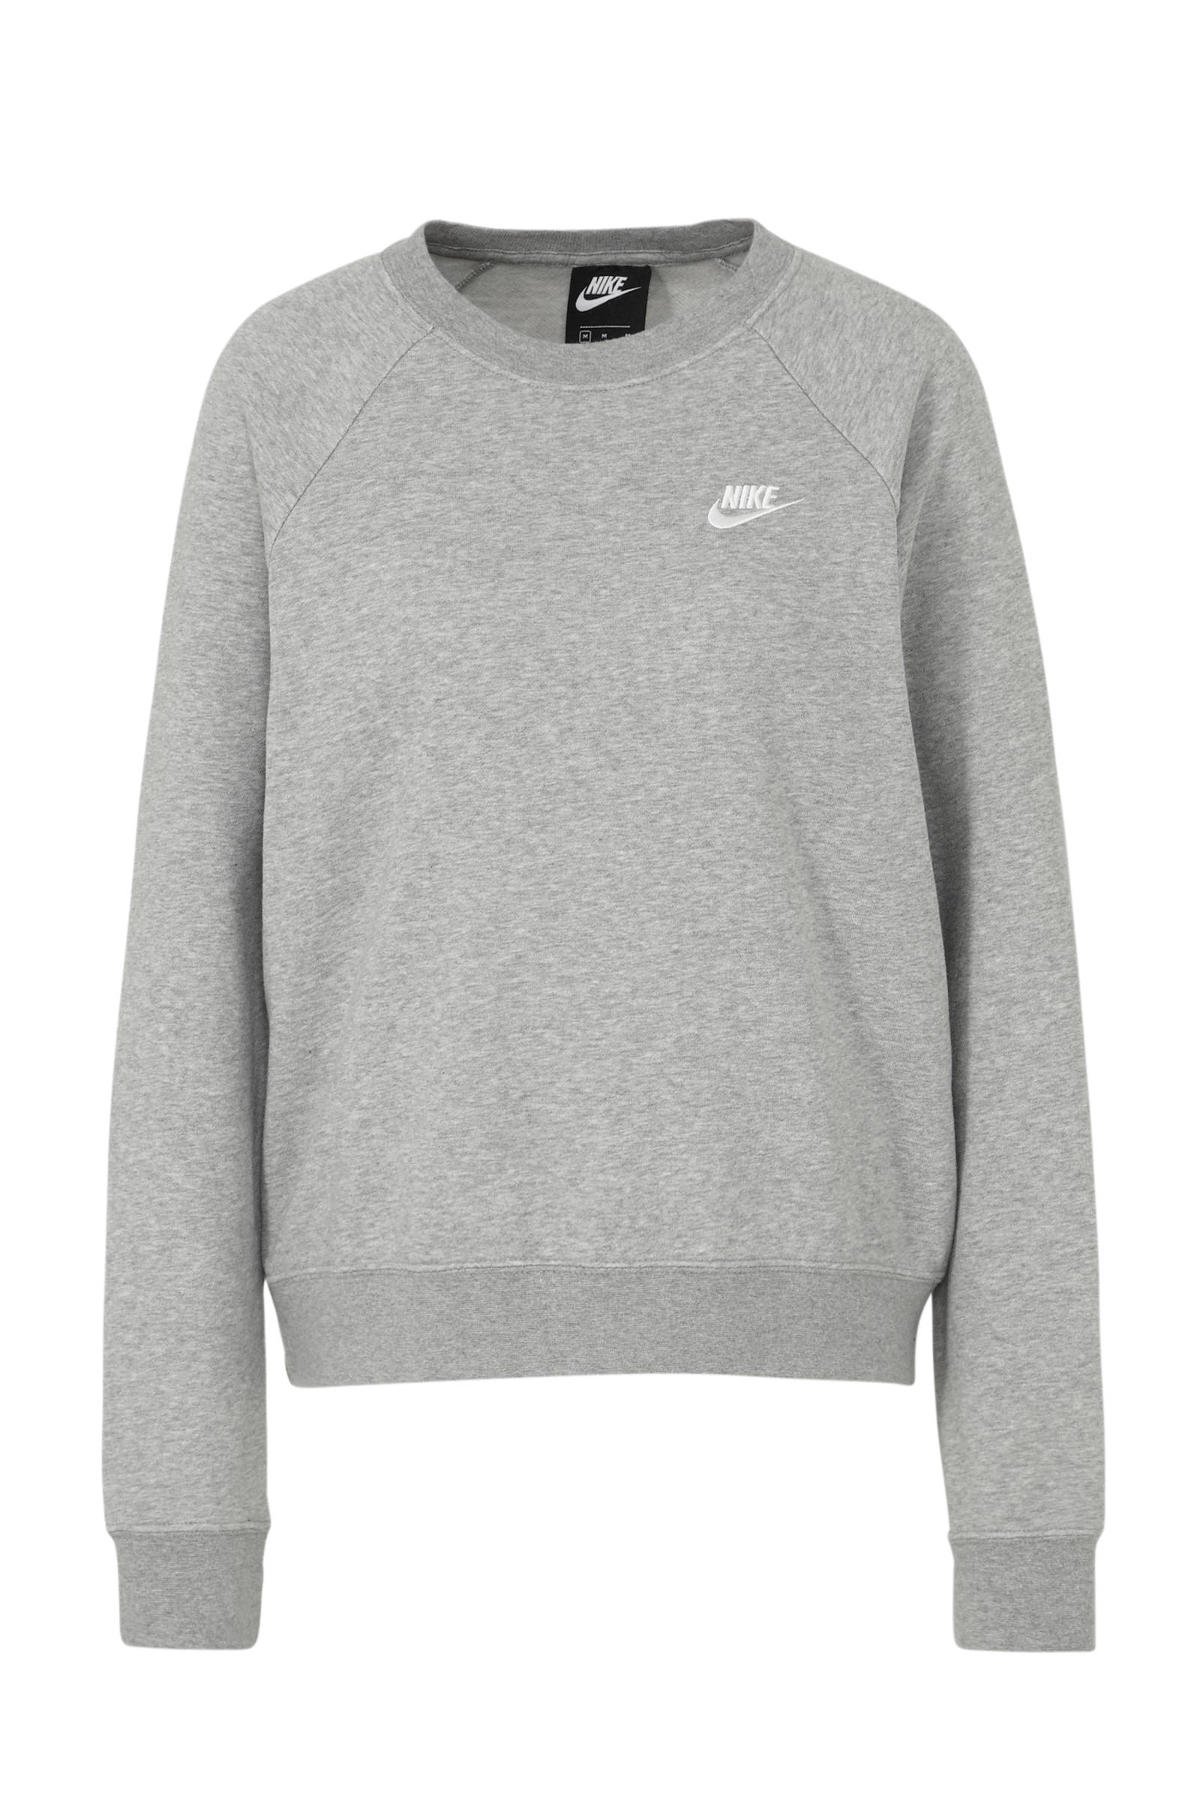 Boos worden Rechtdoor tekort Nike sweater grijs melange | wehkamp